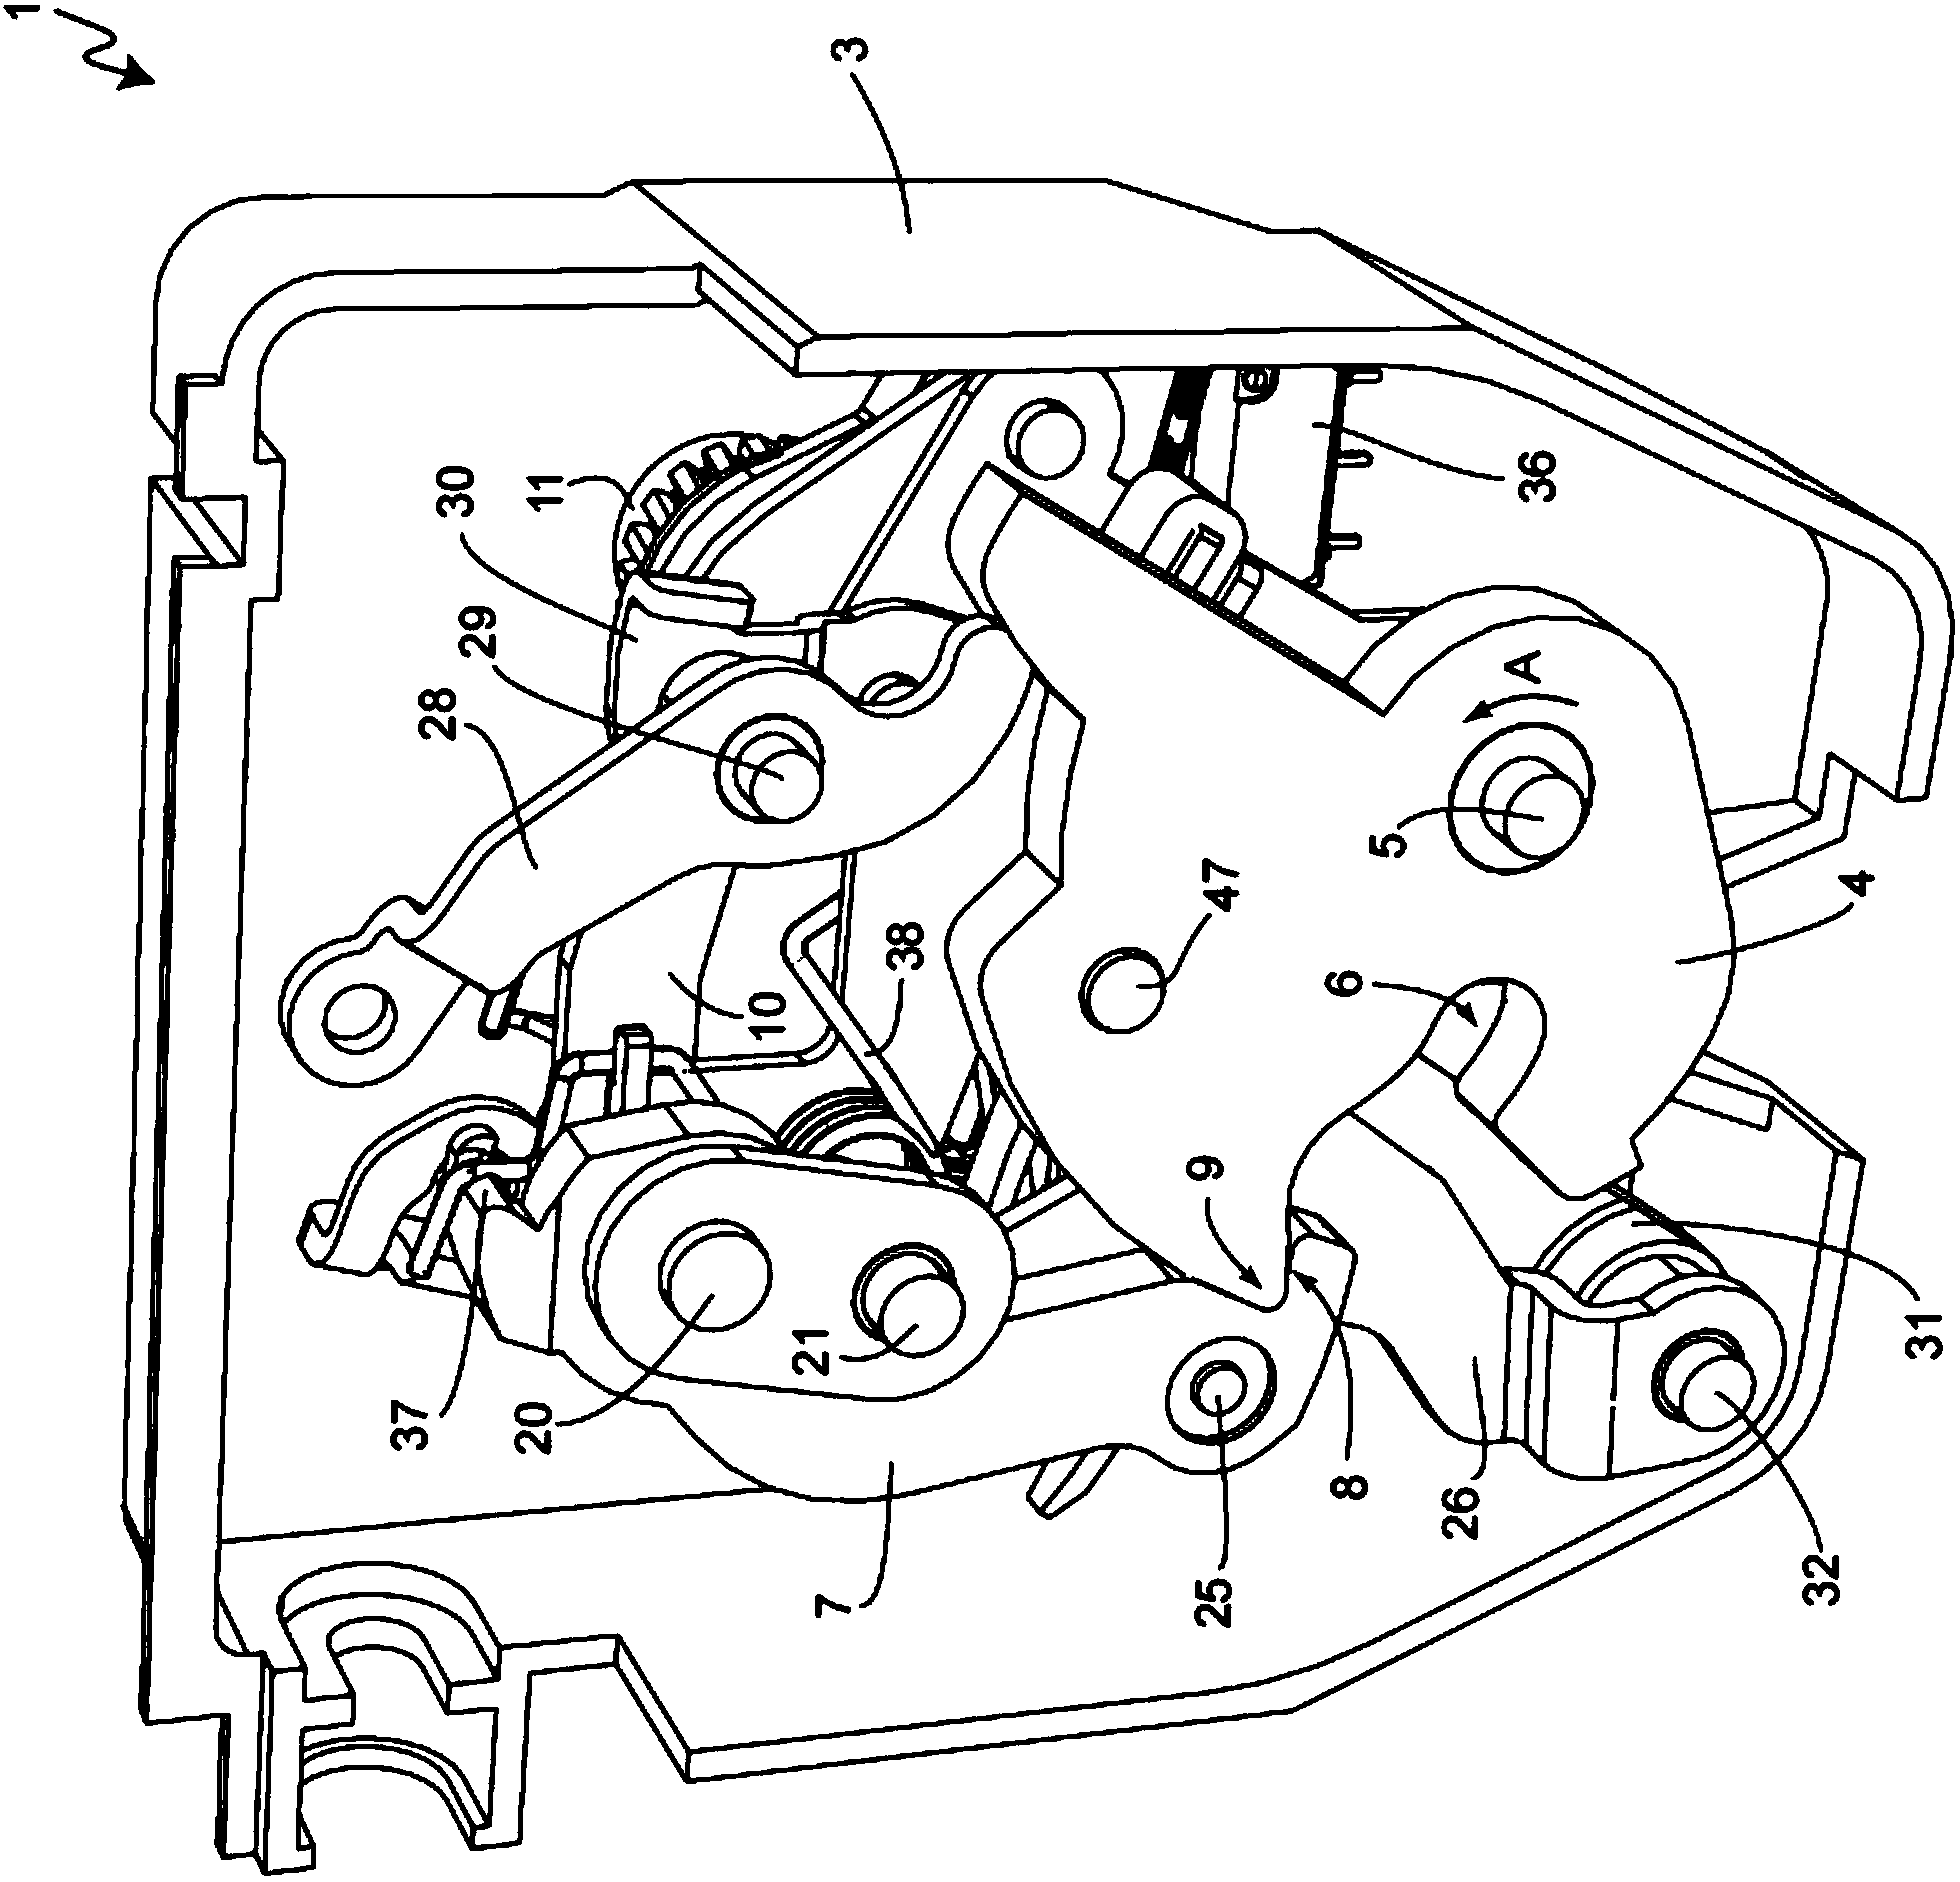 Motor vehicle door lock